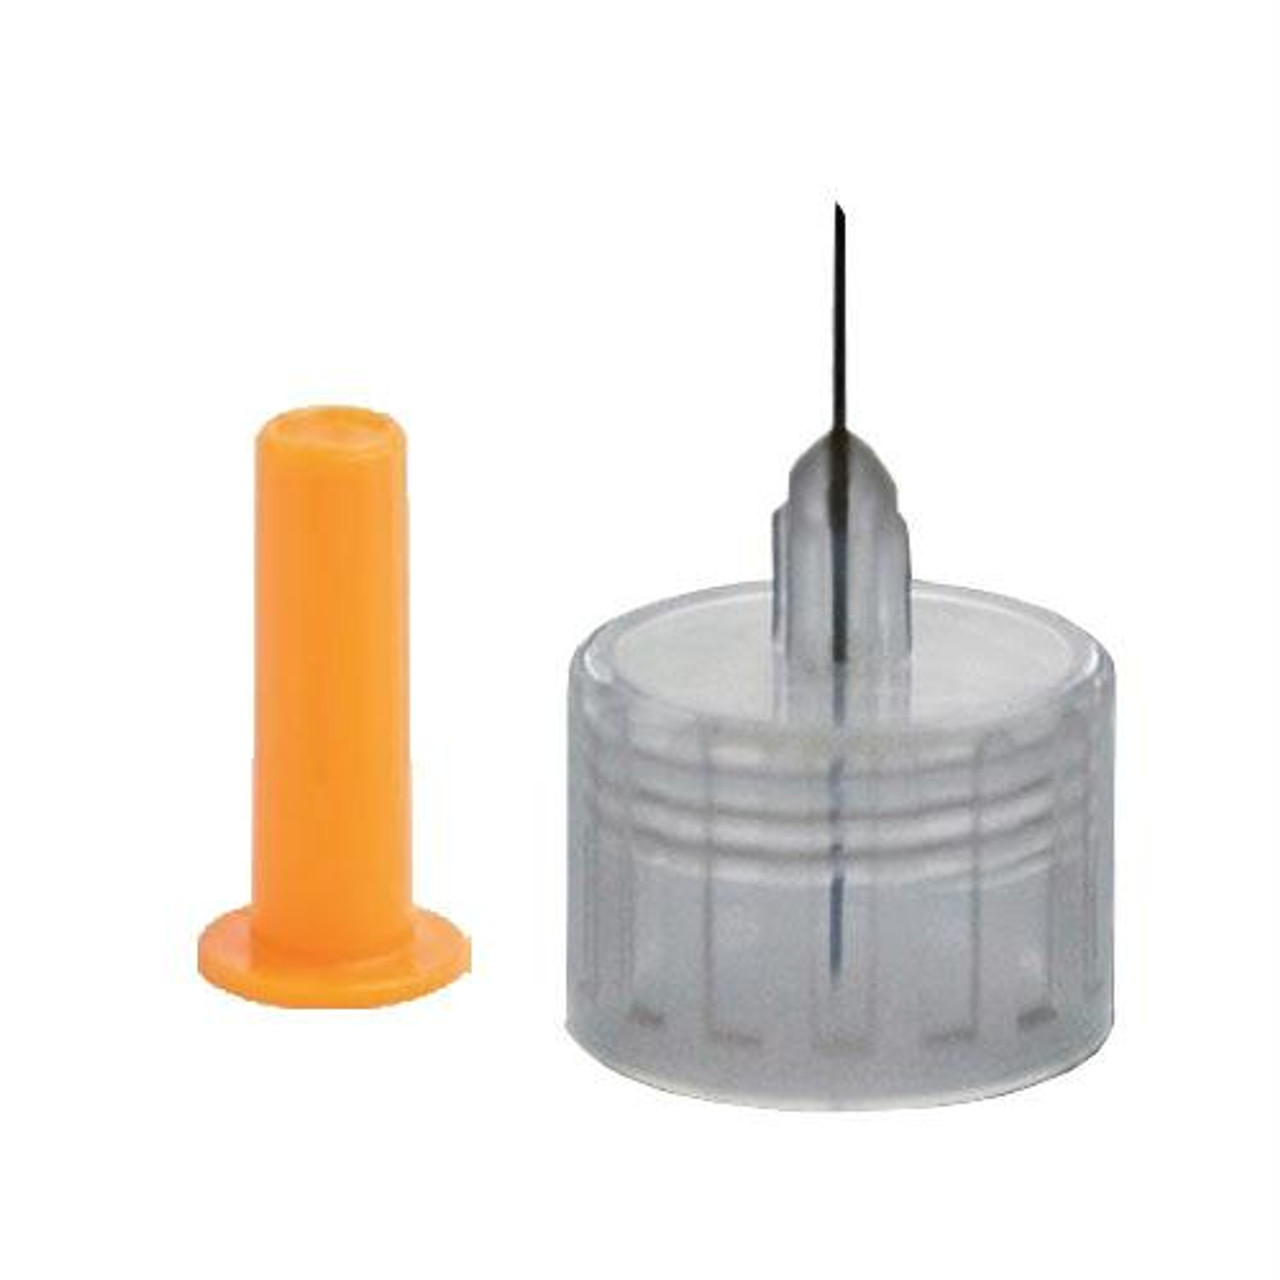  BH Supplies Insulin Pen Needles 32 Gauge - 5/32, 4mm